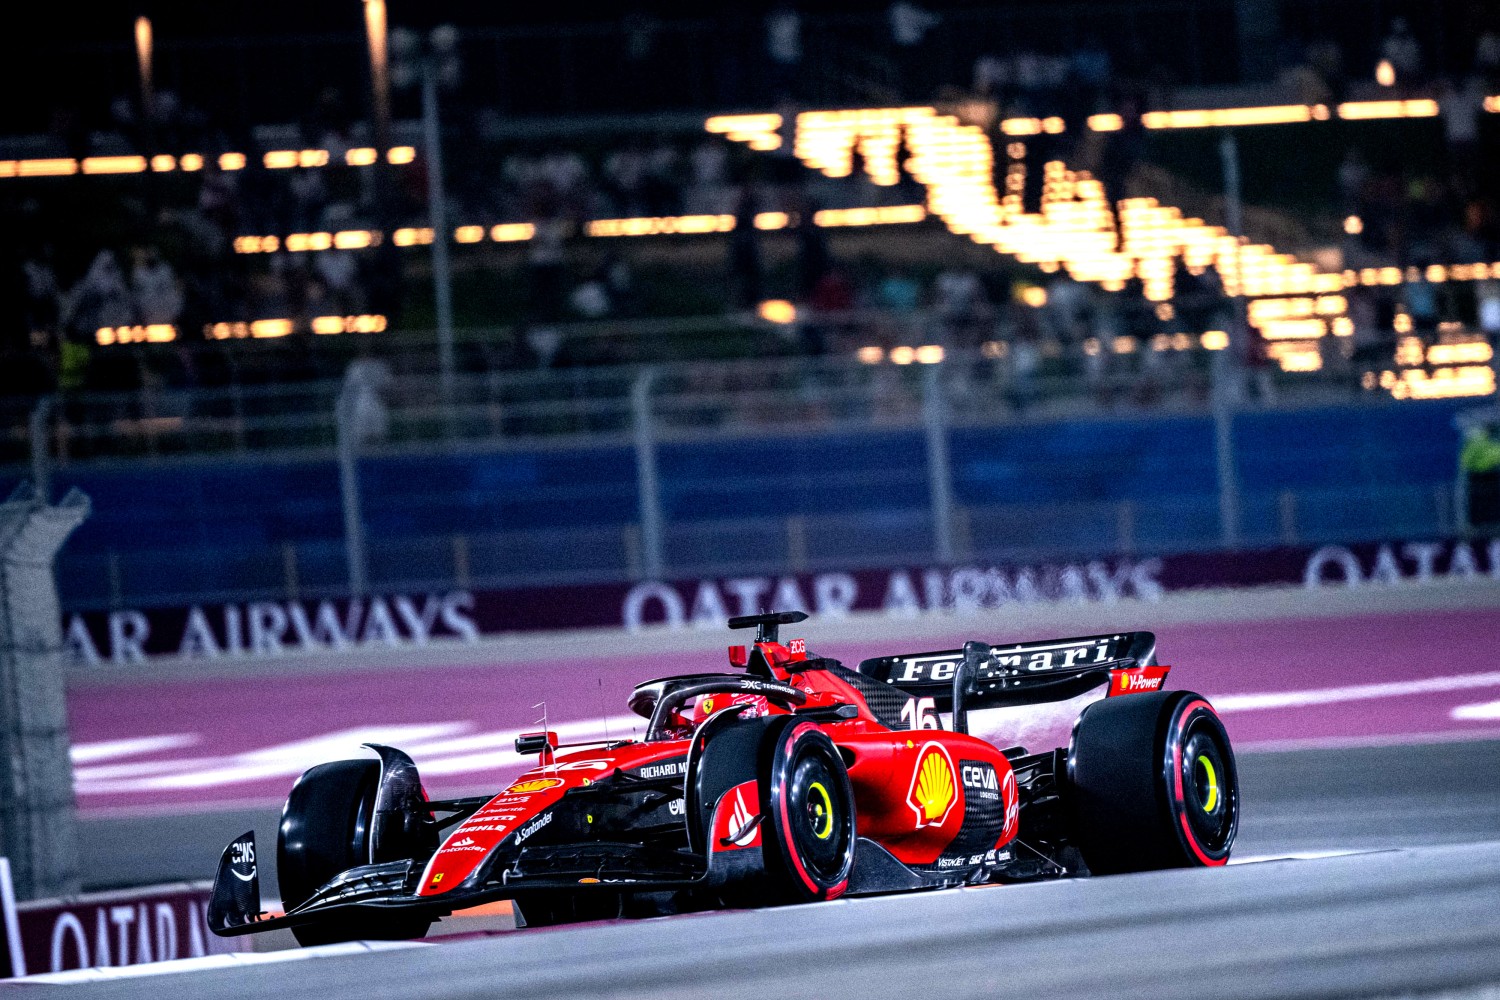 Charles Leclerc - credit: @Scuderia Ferrari Press Office